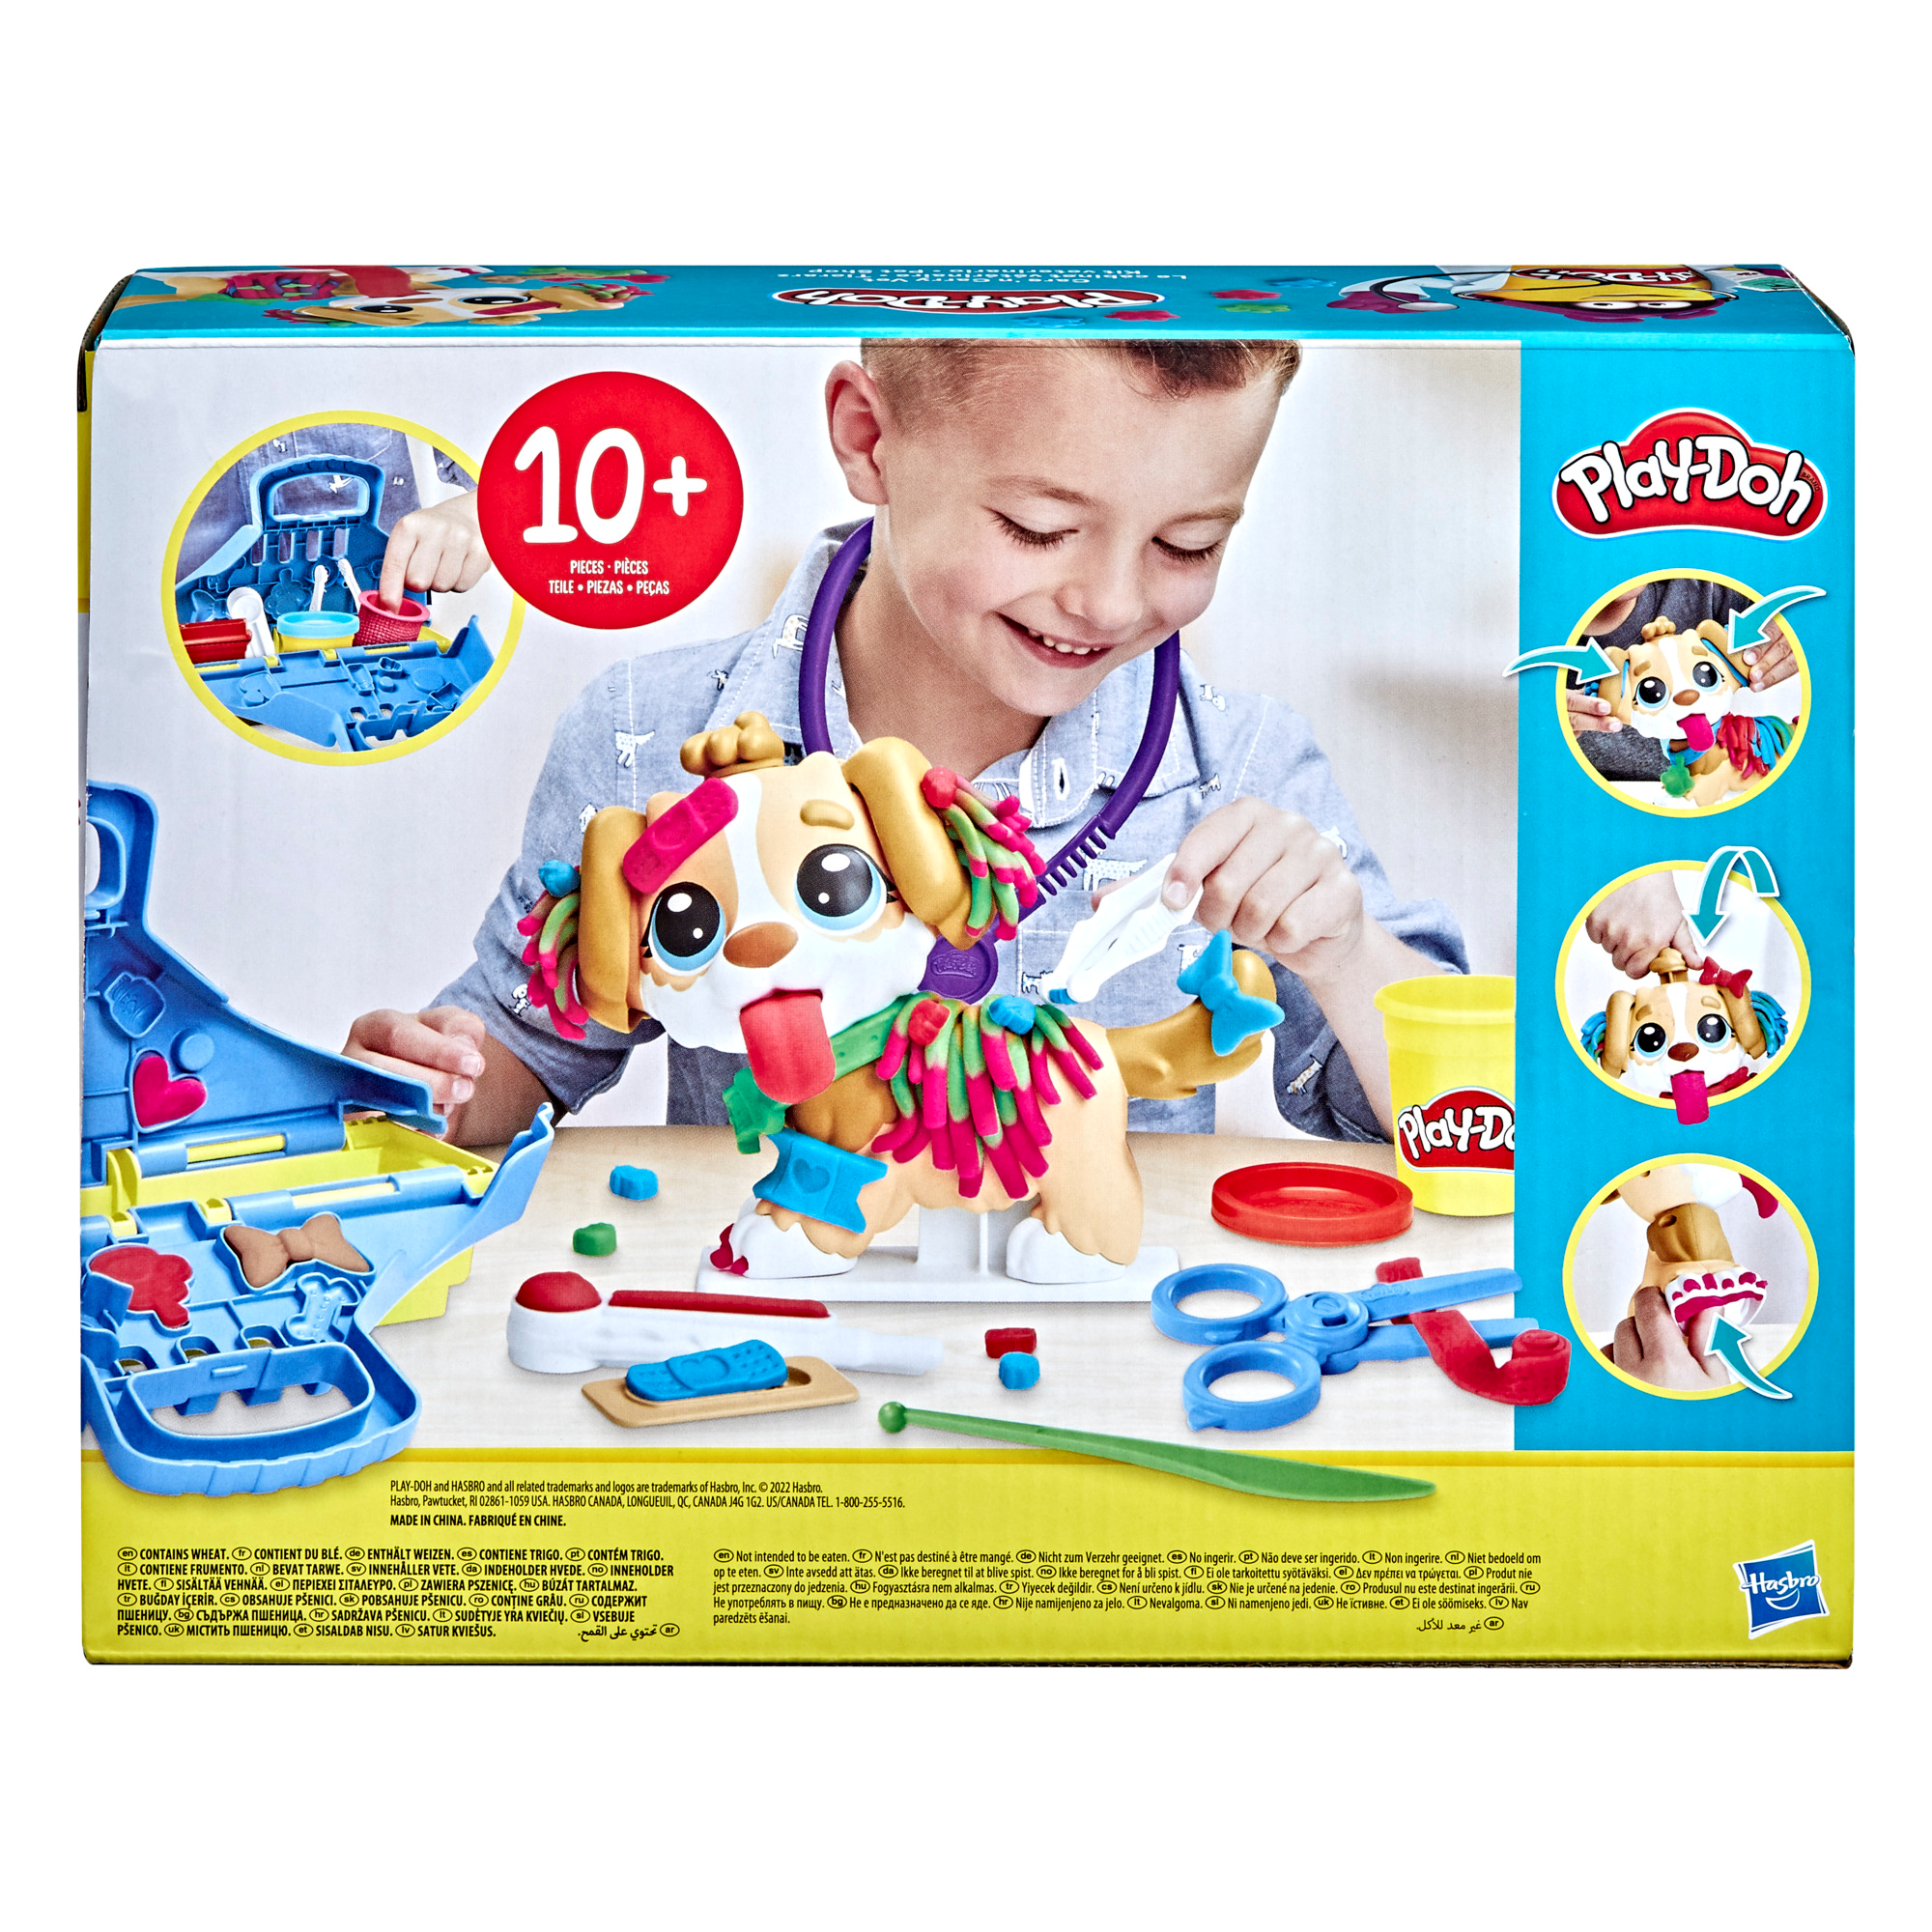 Play-doh - set da veterinario, playset con 10 strumenti e 5 colori di pasta  da modellare atossica, cane giocattolo per bambini dai 3 anni in su - Toys  Center